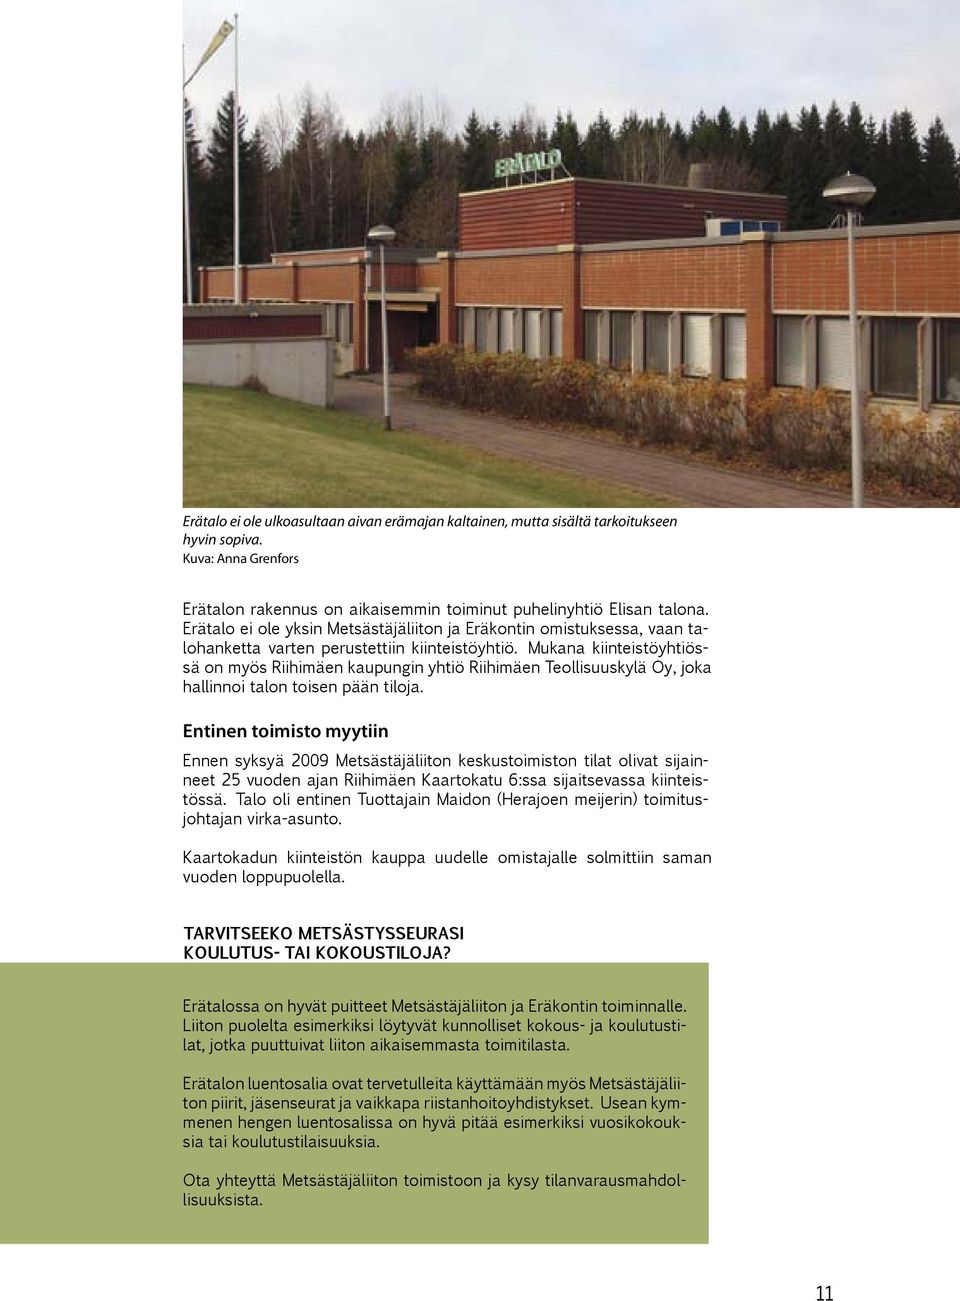 Mukana kiinteistöyhtiössä on myös Riihimäen kaupungin yhtiö Riihimäen Teollisuuskylä Oy, joka hallinnoi talon toisen pään tiloja.